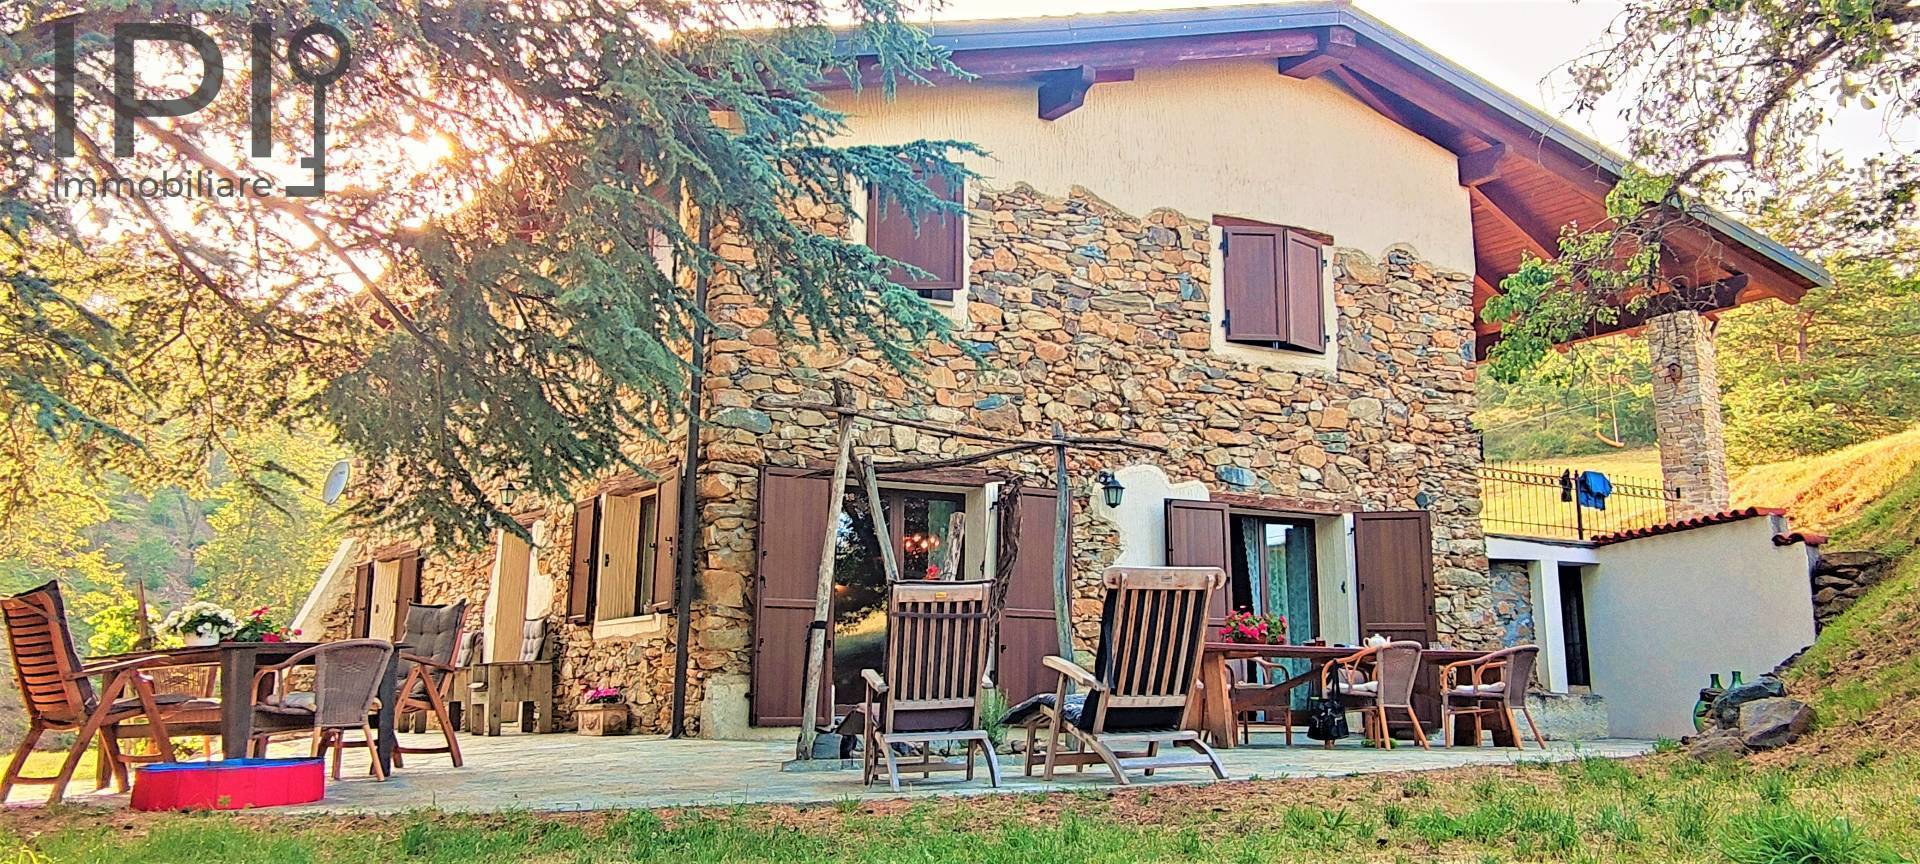 Villa in vendita a Spigno Monferrato, 6 locali, prezzo € 340.000 | PortaleAgenzieImmobiliari.it